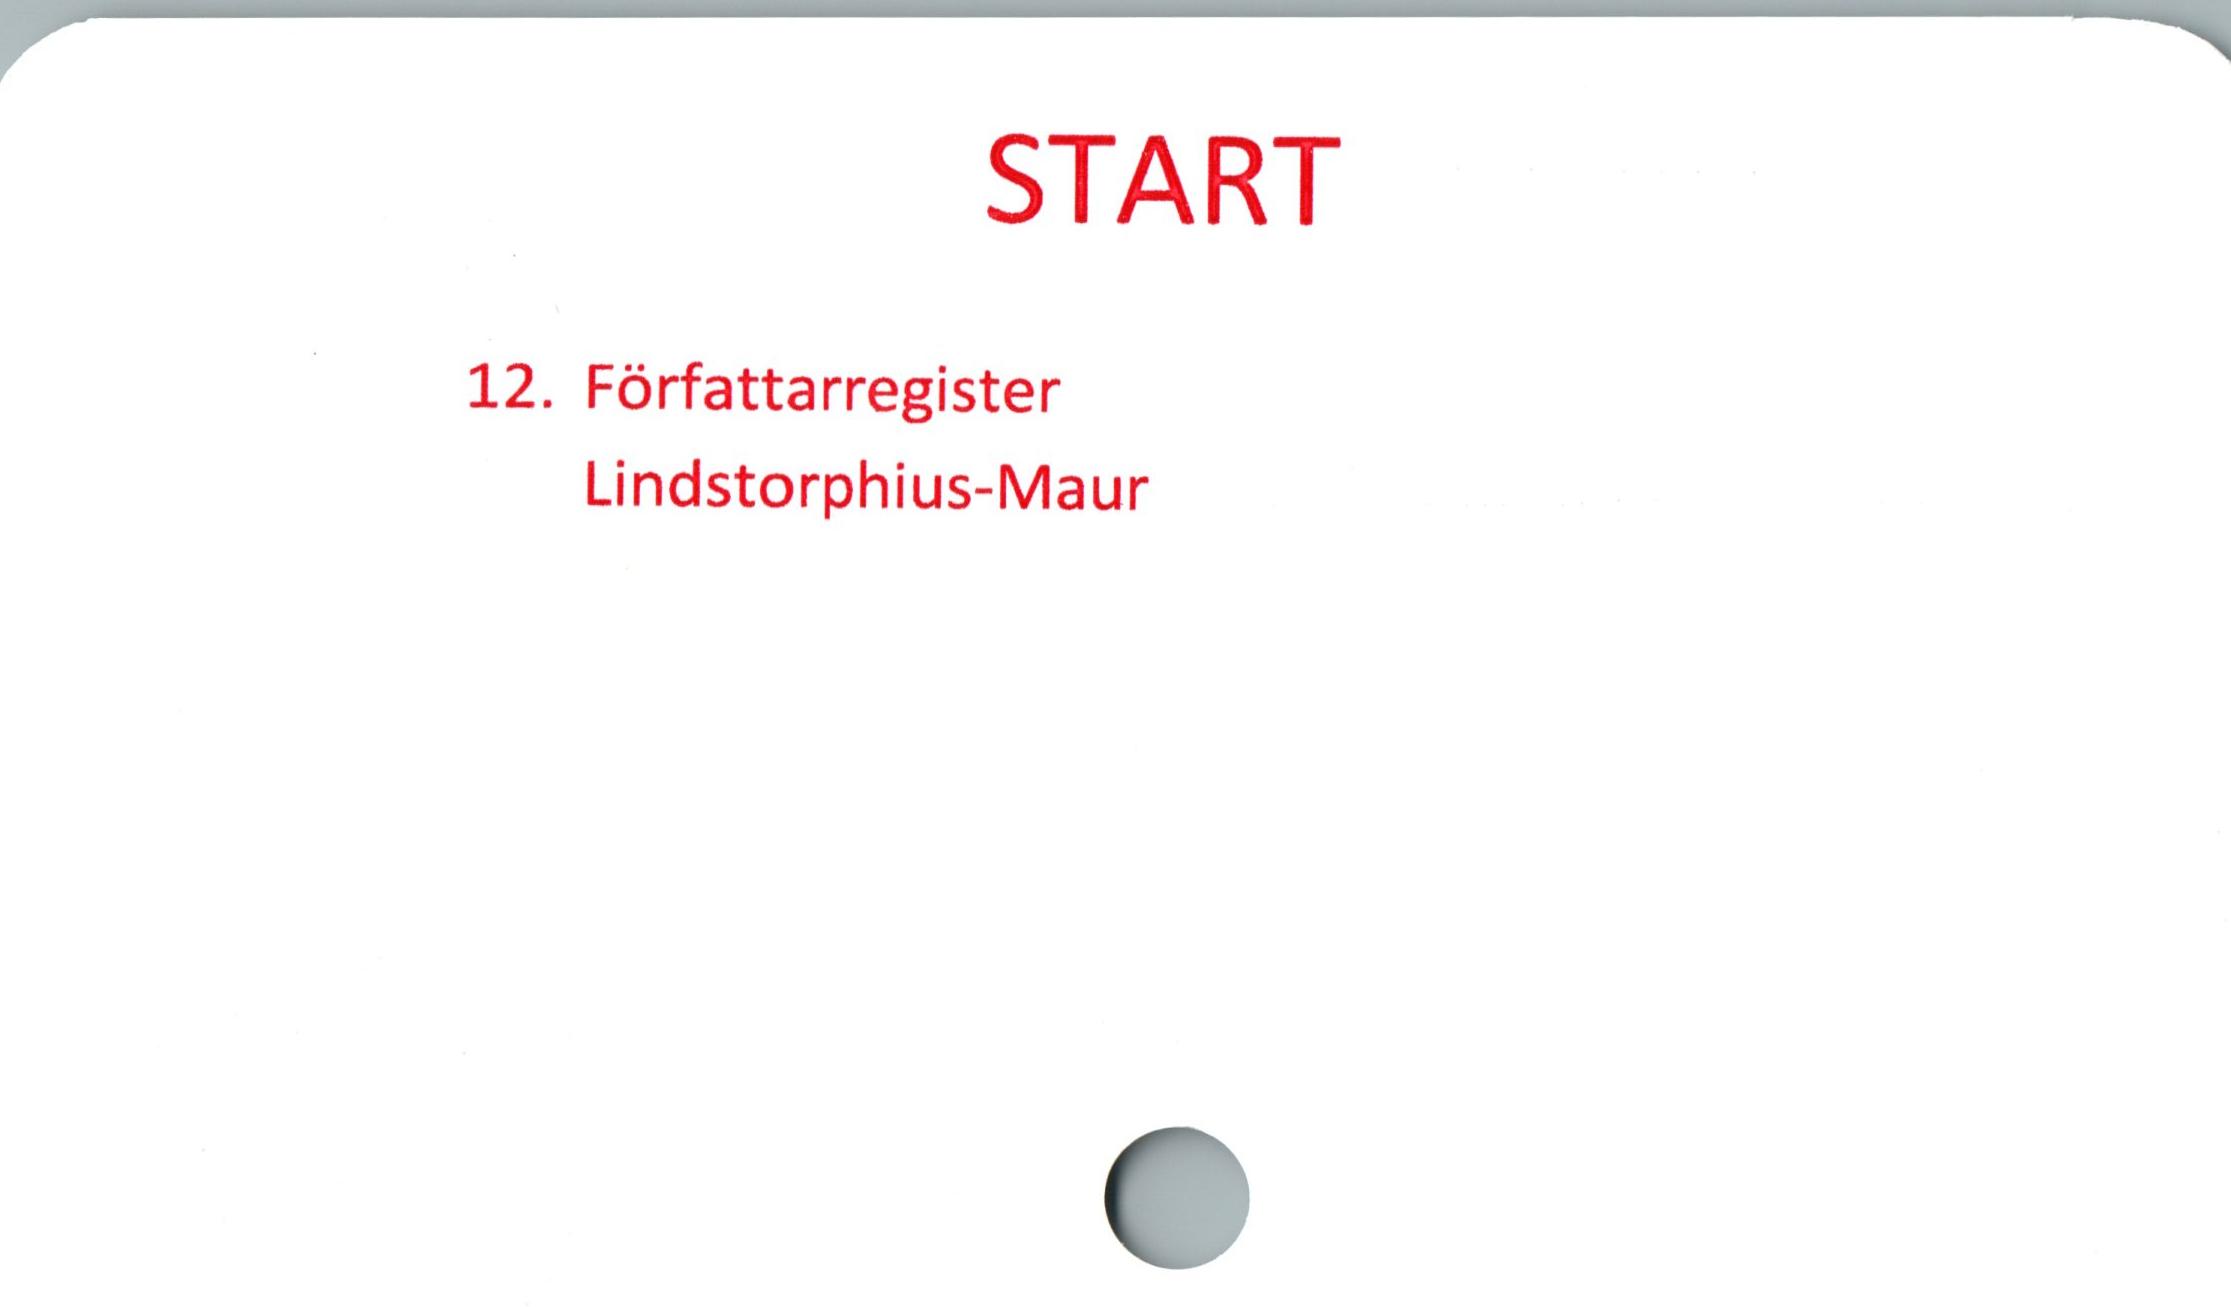  ﻿START

12. Författarregister
Lindstorphius-Maur